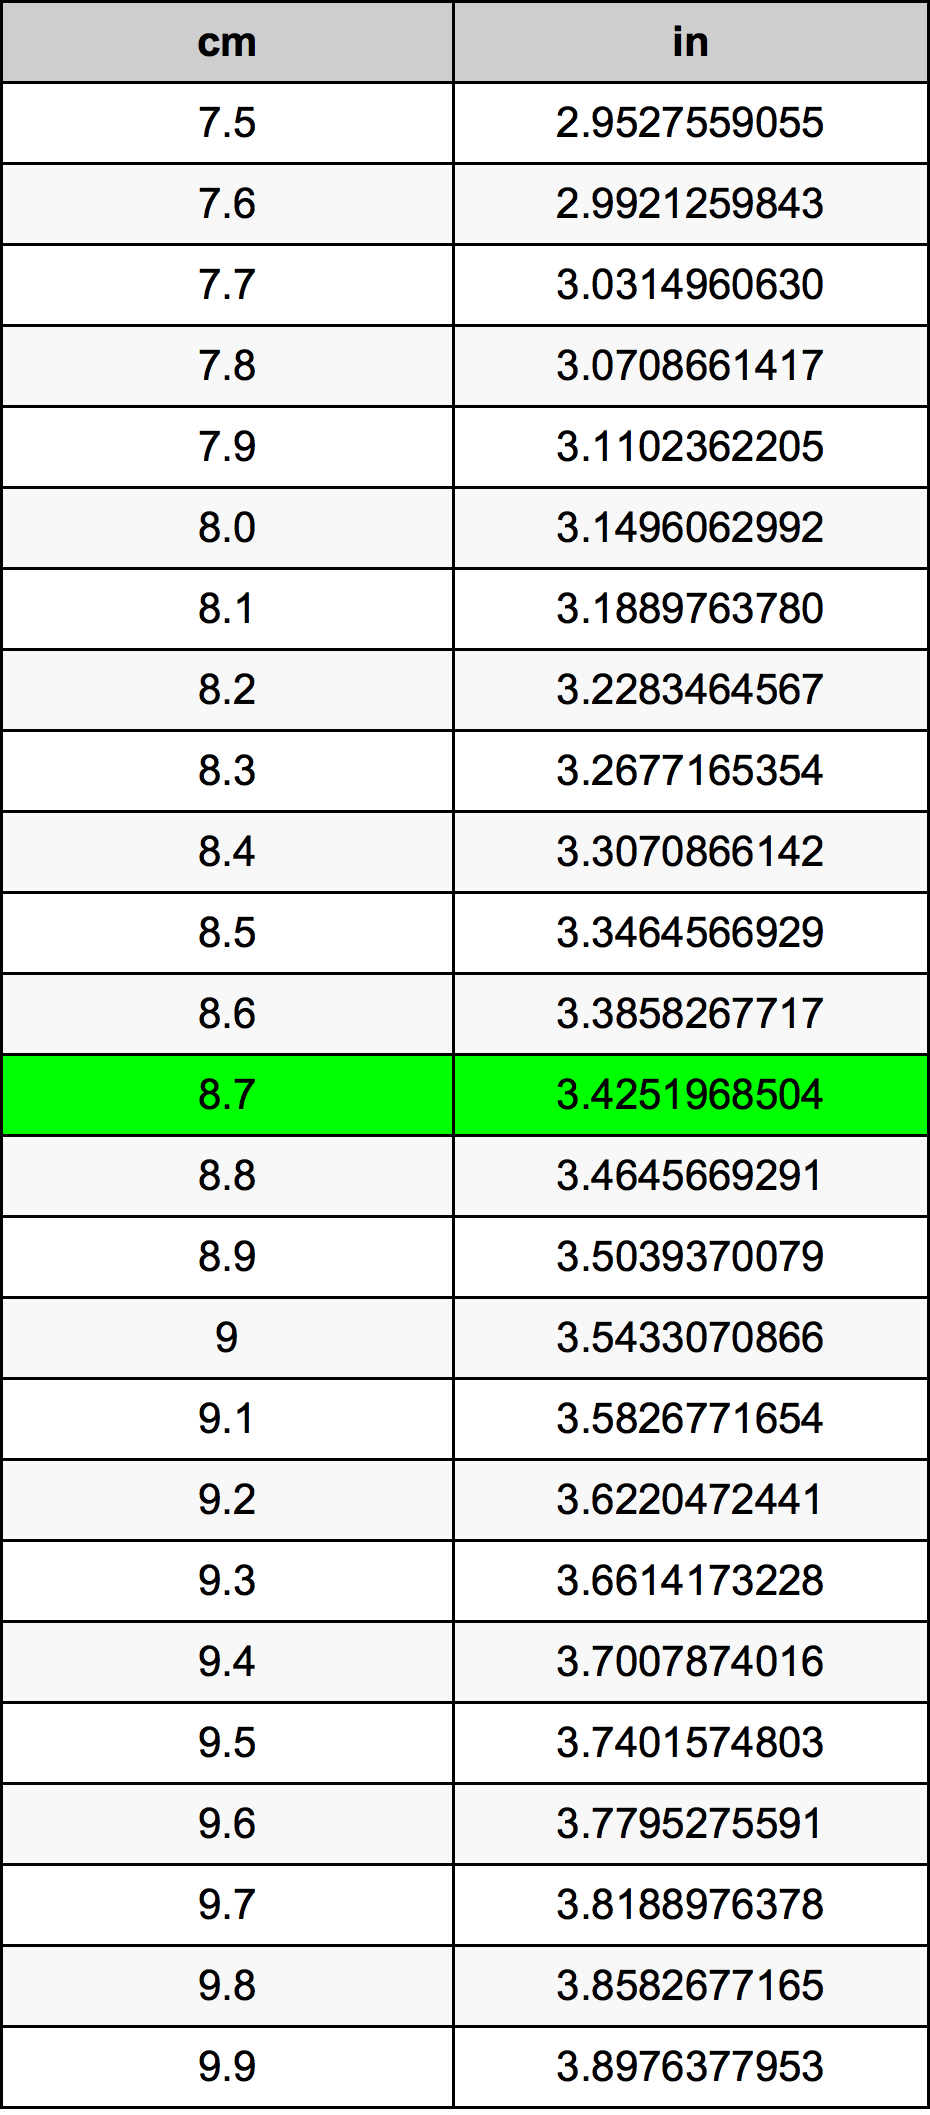 8.7 Centiméter átszámítási táblázat